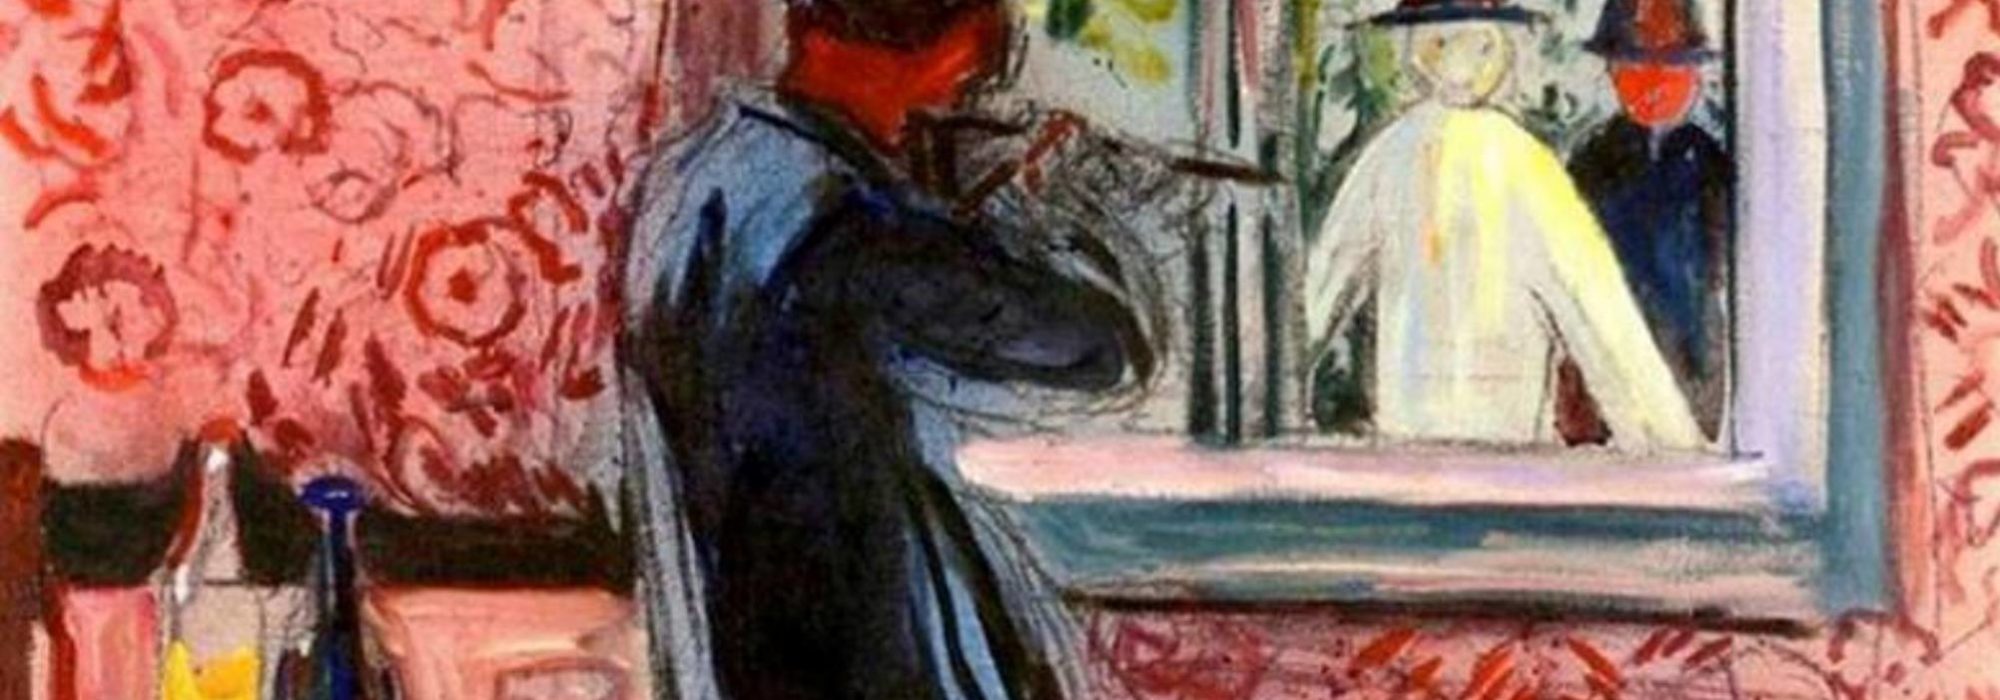 Imagem: Convidados não Convidados (Edvard Munch, detalhe, 1932)